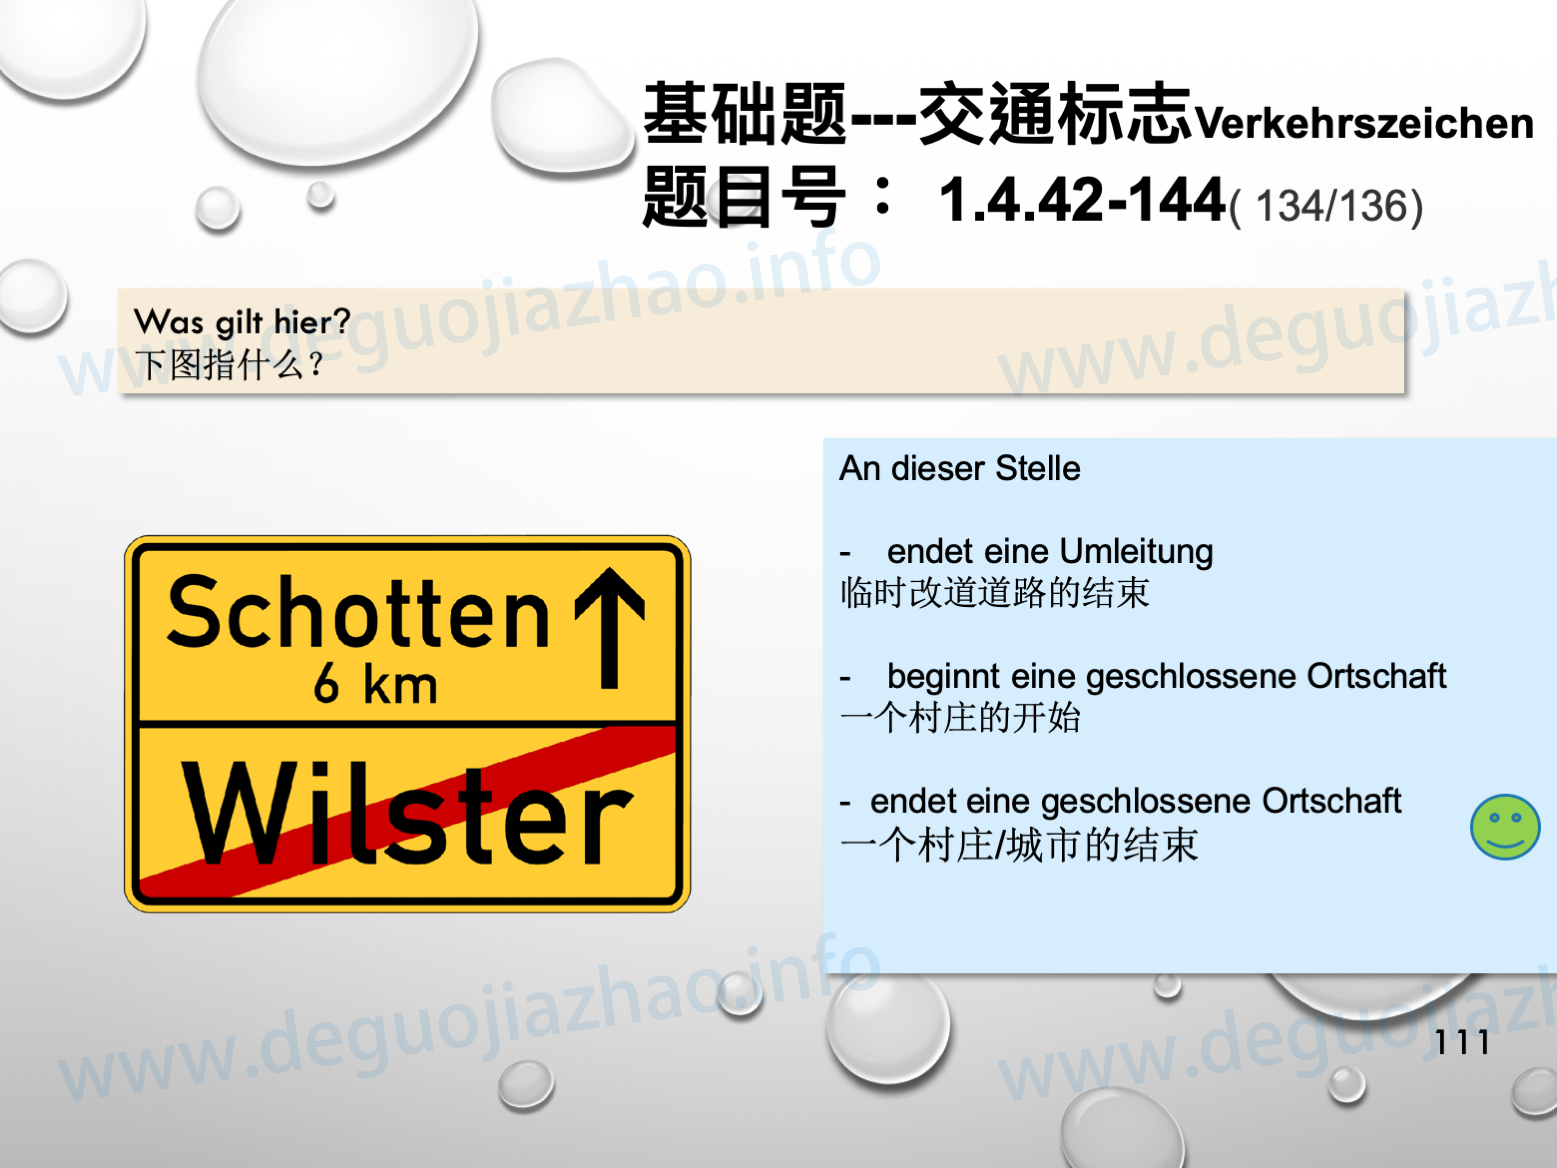 德国驾照官方理论题 章节 1.4.42 指向标志